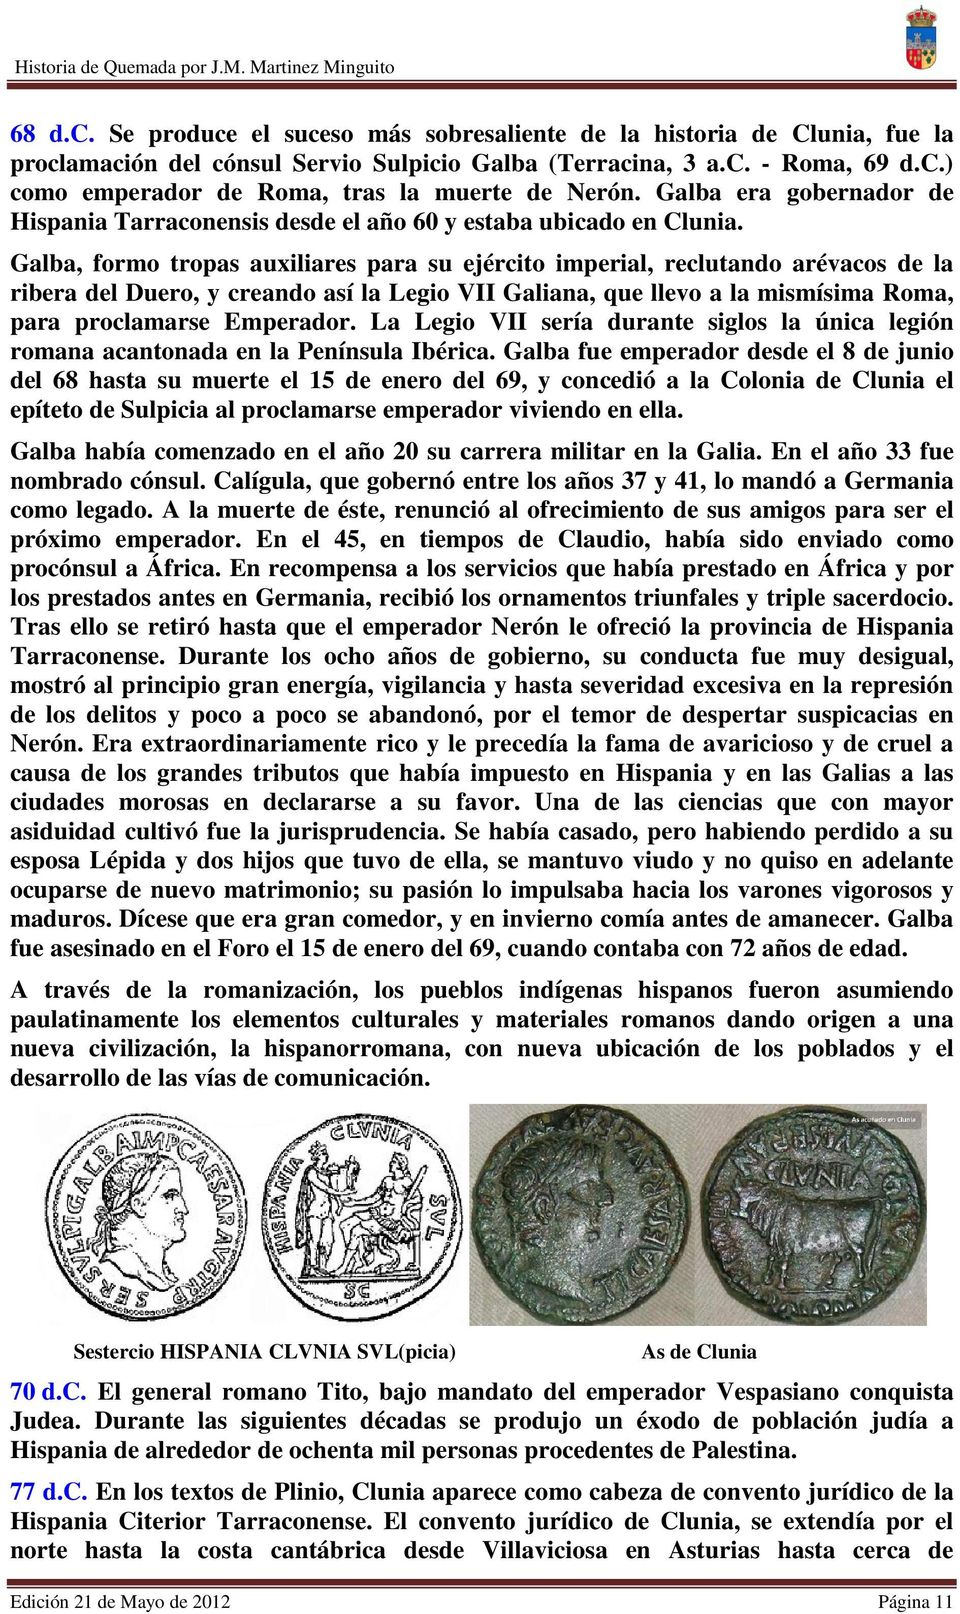 Galba, formo tropas auxiliares para su ejército imperial, reclutando arévacos de la ribera del Duero, y creando así la Legio VII Galiana, que llevo a la mismísima Roma, para proclamarse Emperador.